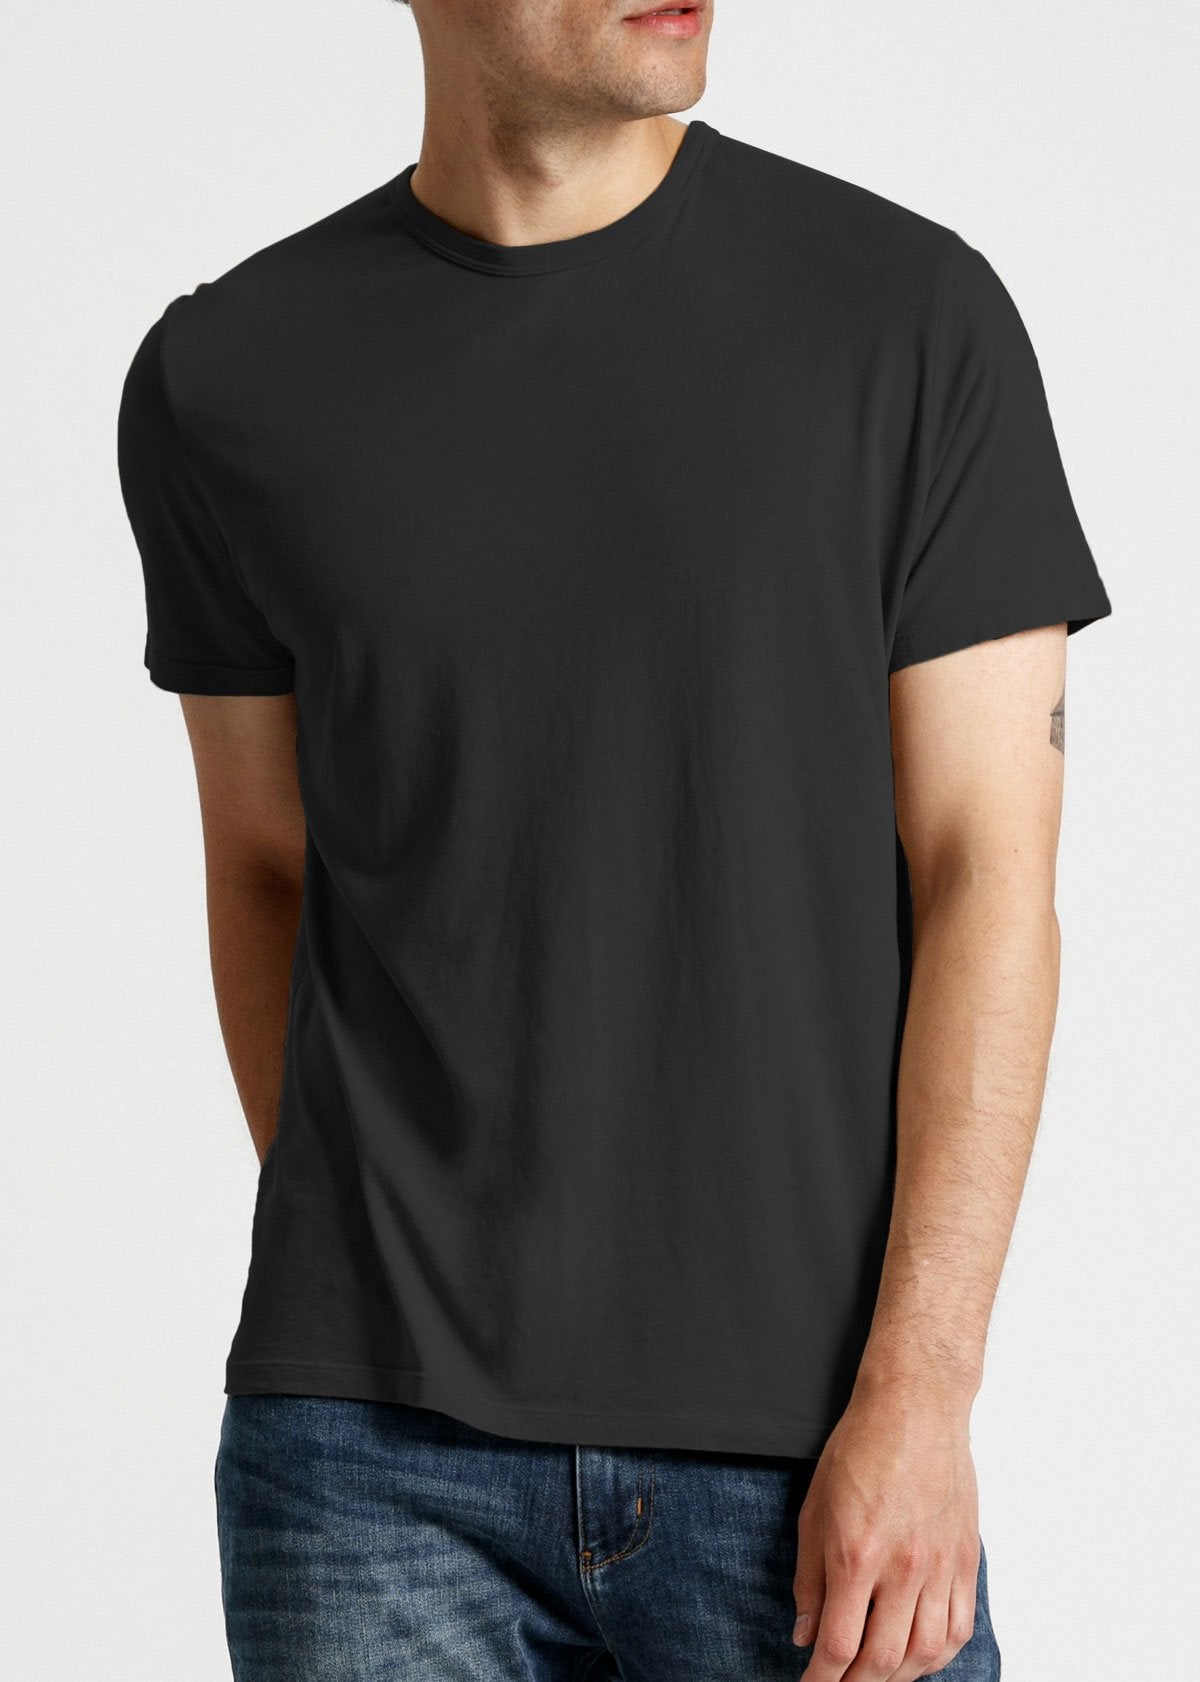 Mens soft lightweight black t-shirt front